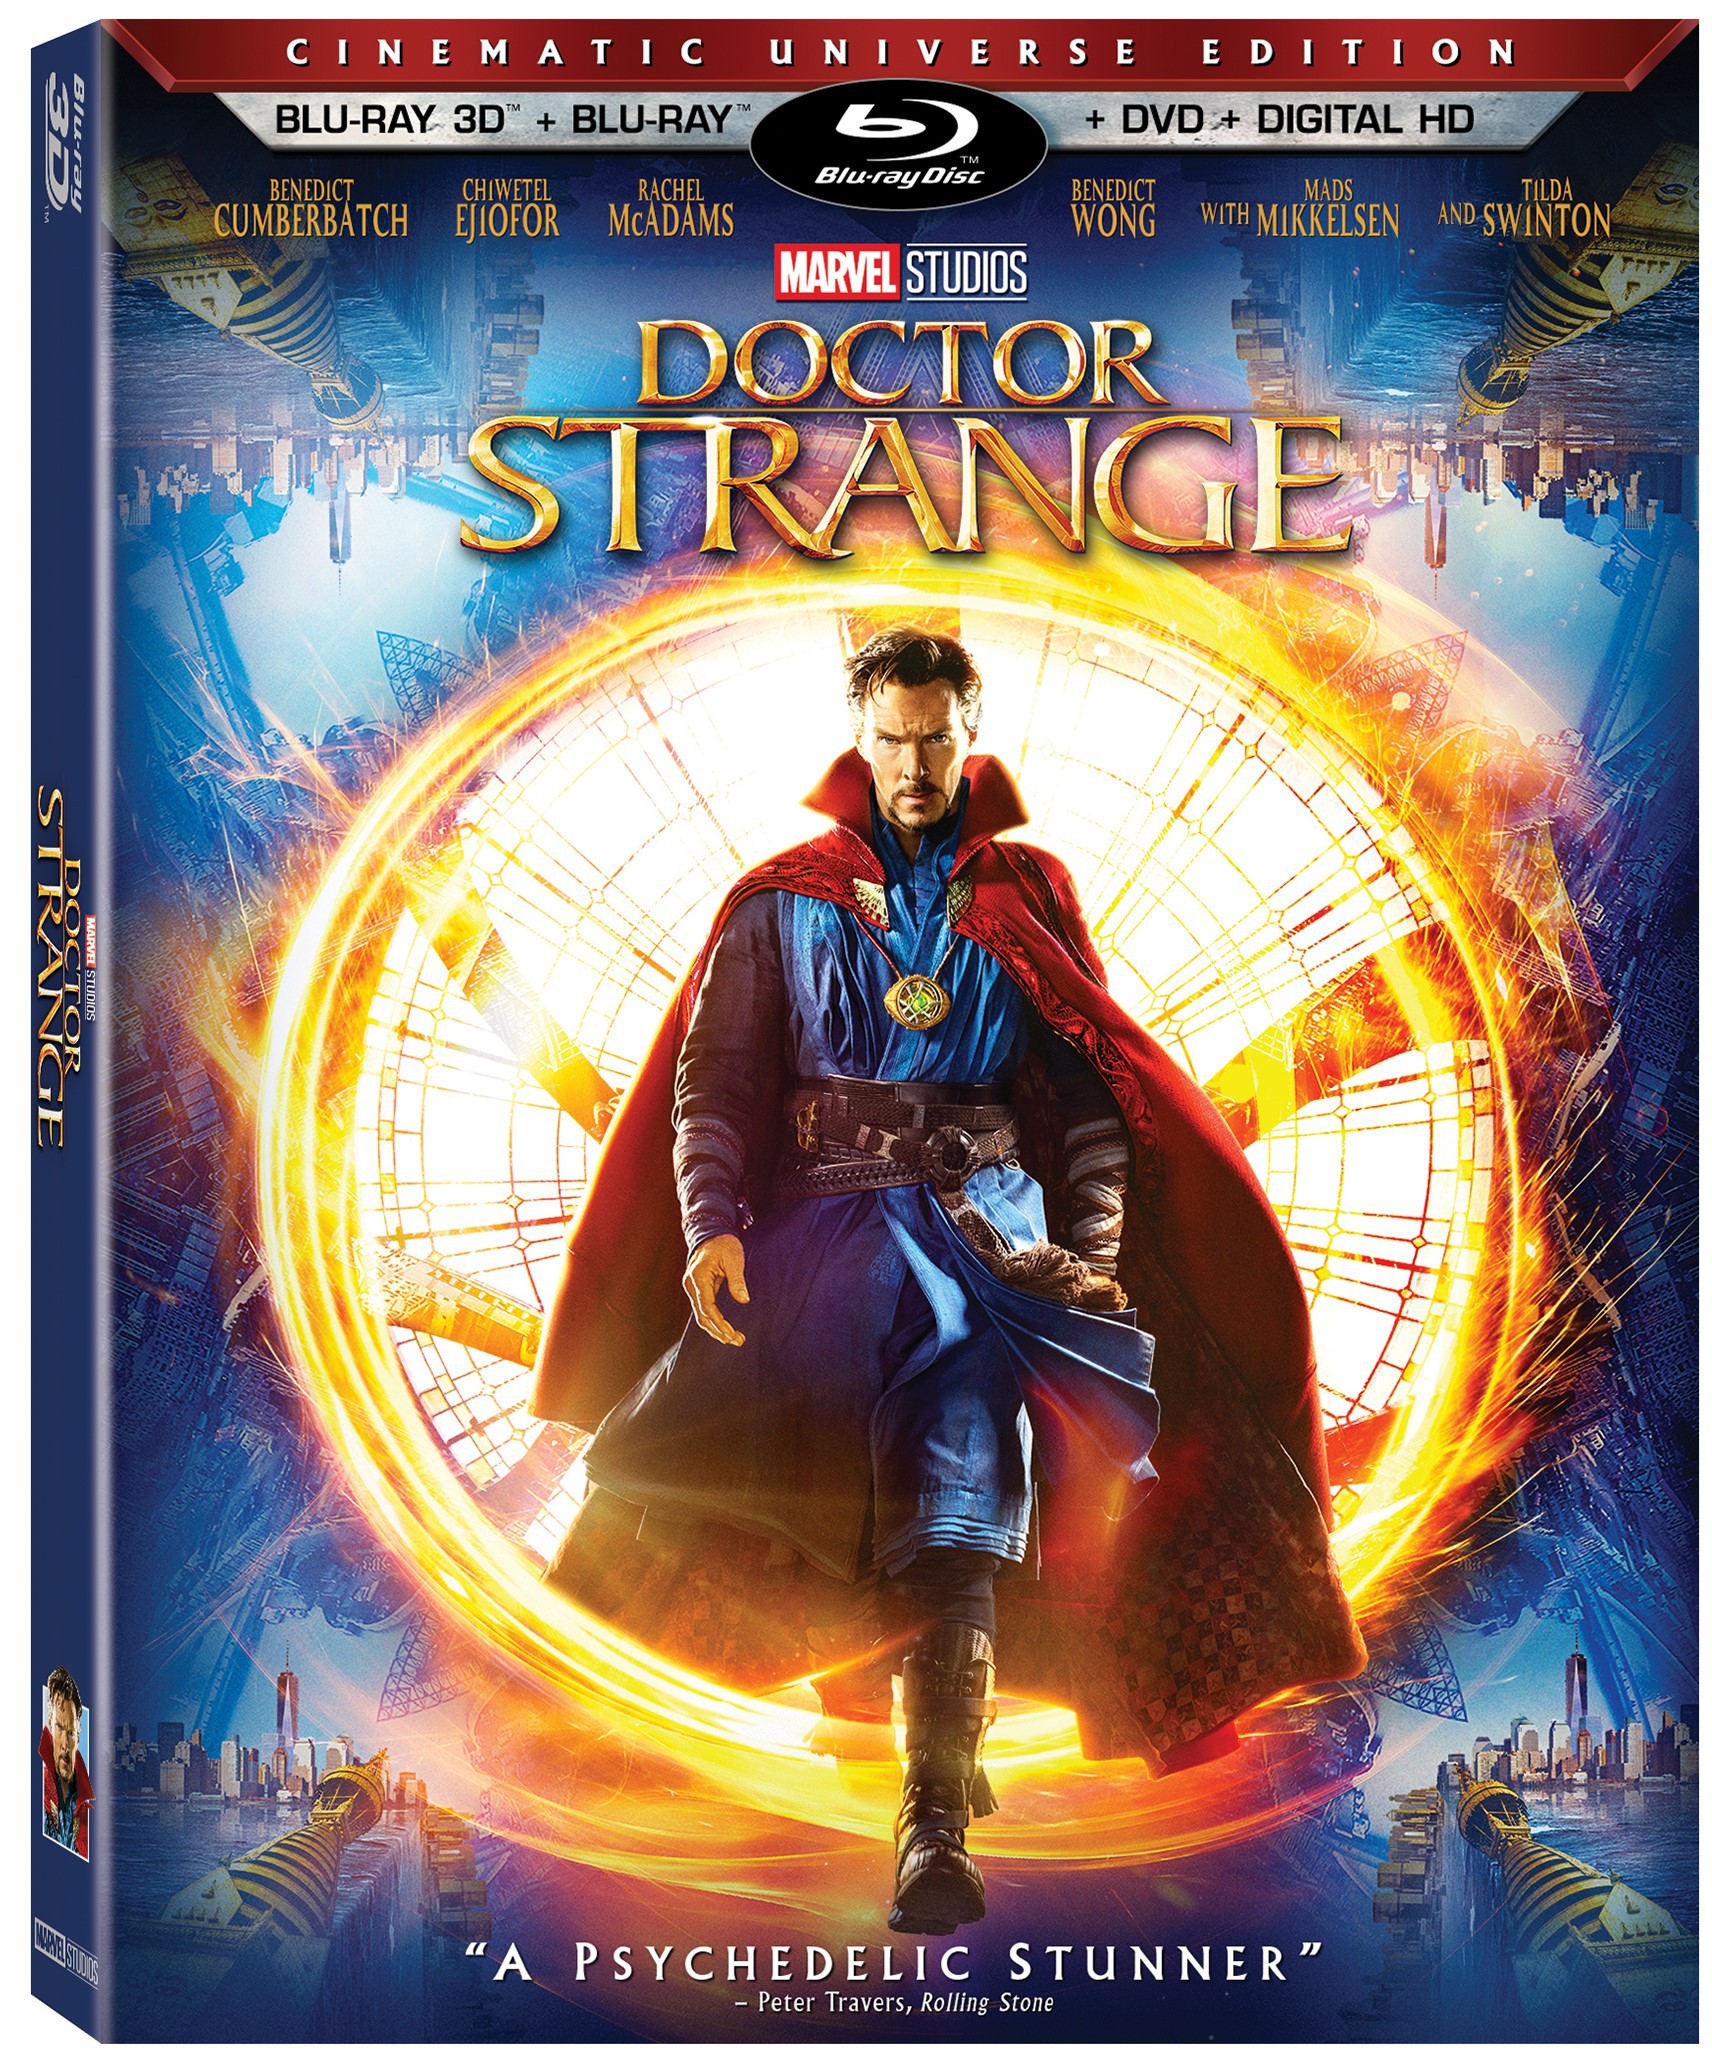 DoctorStrange3D Doctor Strange Blu-Ray Concept Art